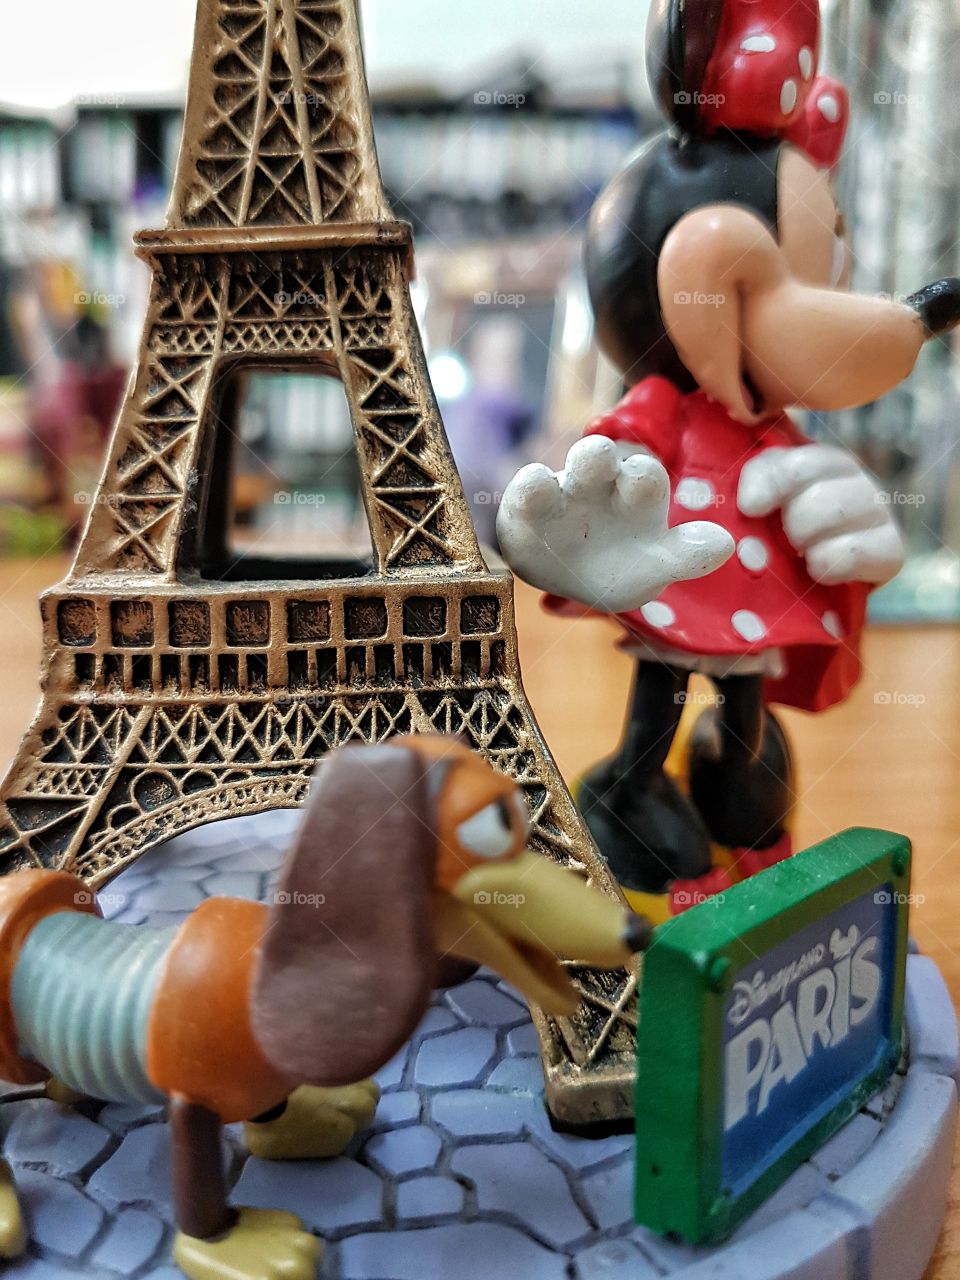 Minnie in Paris.